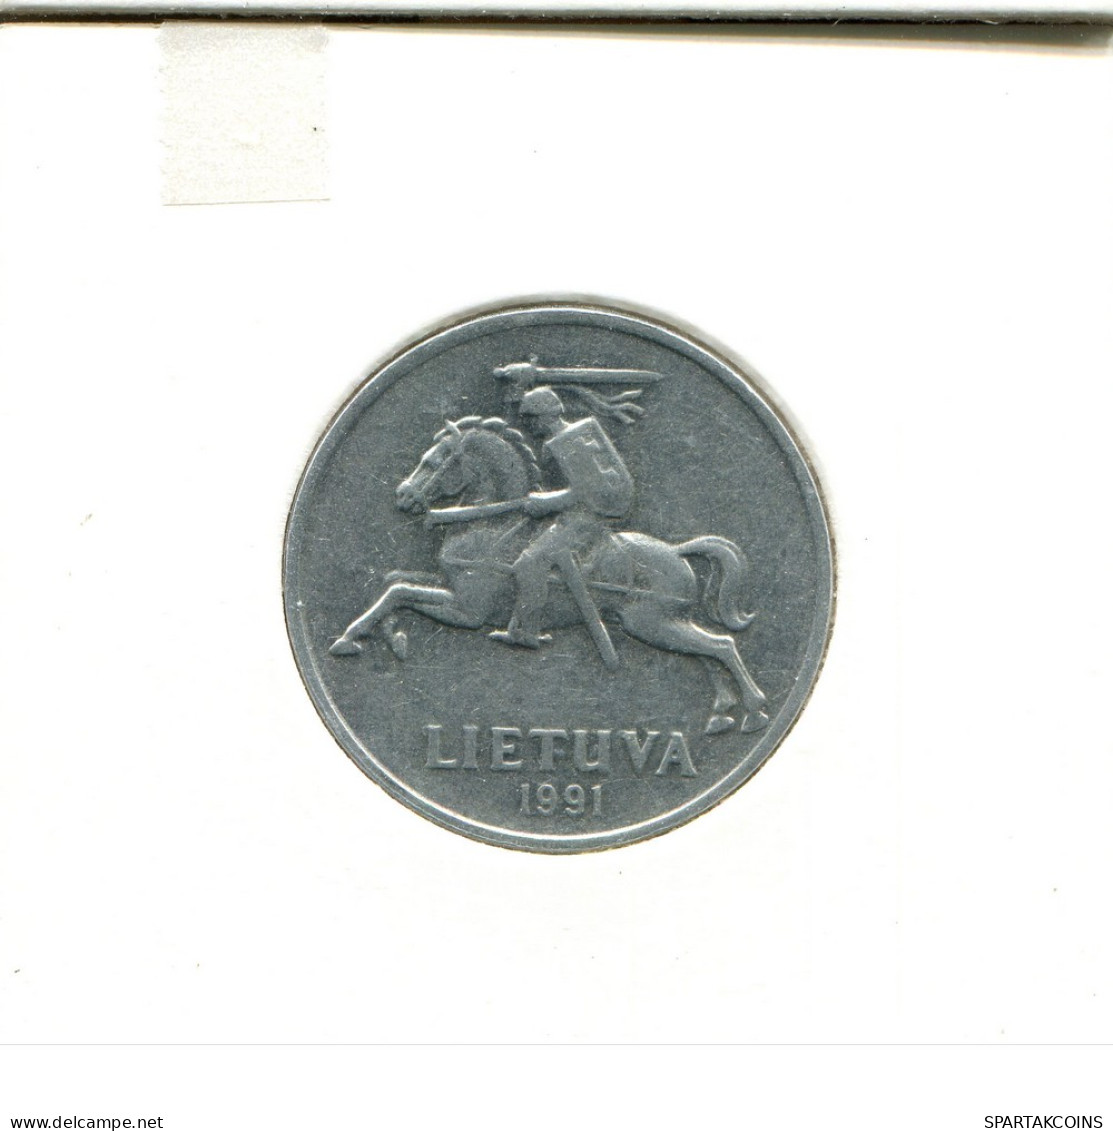 5 CENTAI 1991 LITHUANIA Coin #AS695.U - Litouwen